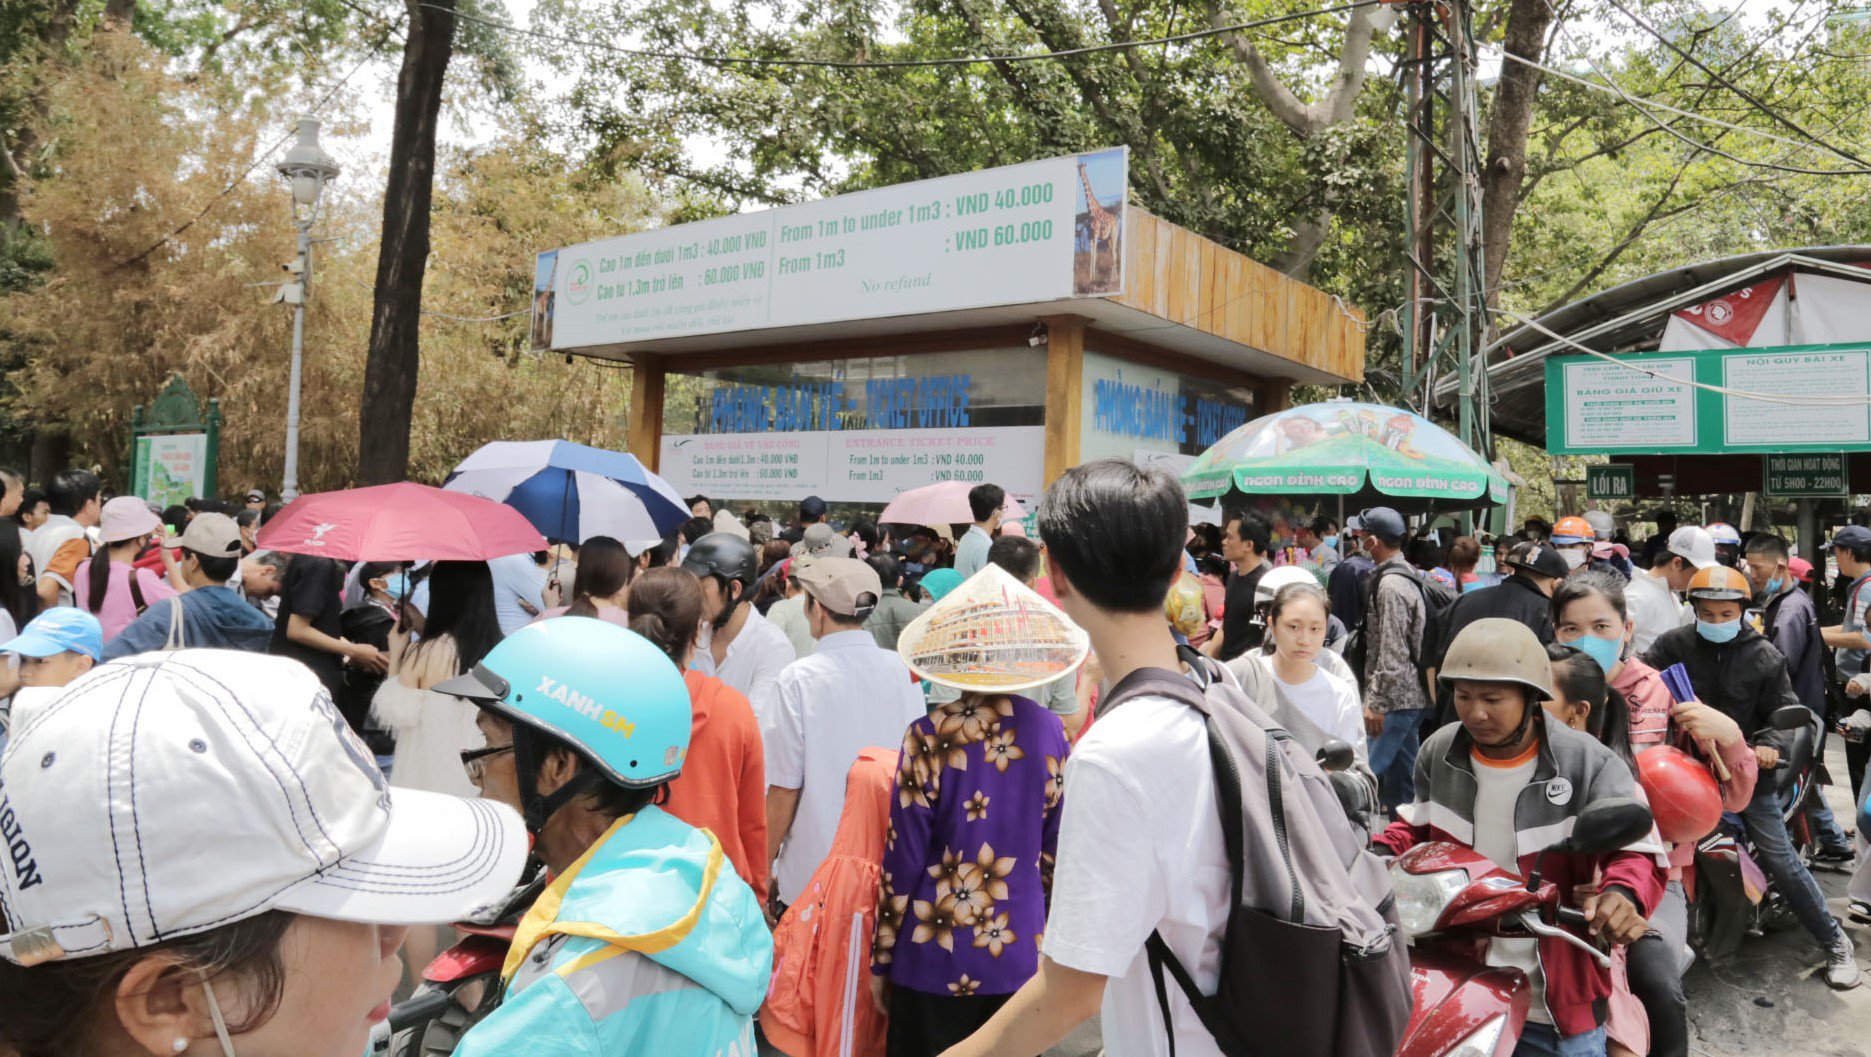 Từ sáng, đông đảo du khách đã xếp hàng chờ vào cổng chính của Thảo Cầm Viên trên đường Nguyễn Bỉnh Khiêm. Xe cộ chen nhau nhích từng chút một vào bãi gửi. Lực lượng bảo vệ phải mở thêm điểm giữ xe ở chỗ khác trong sở thú.